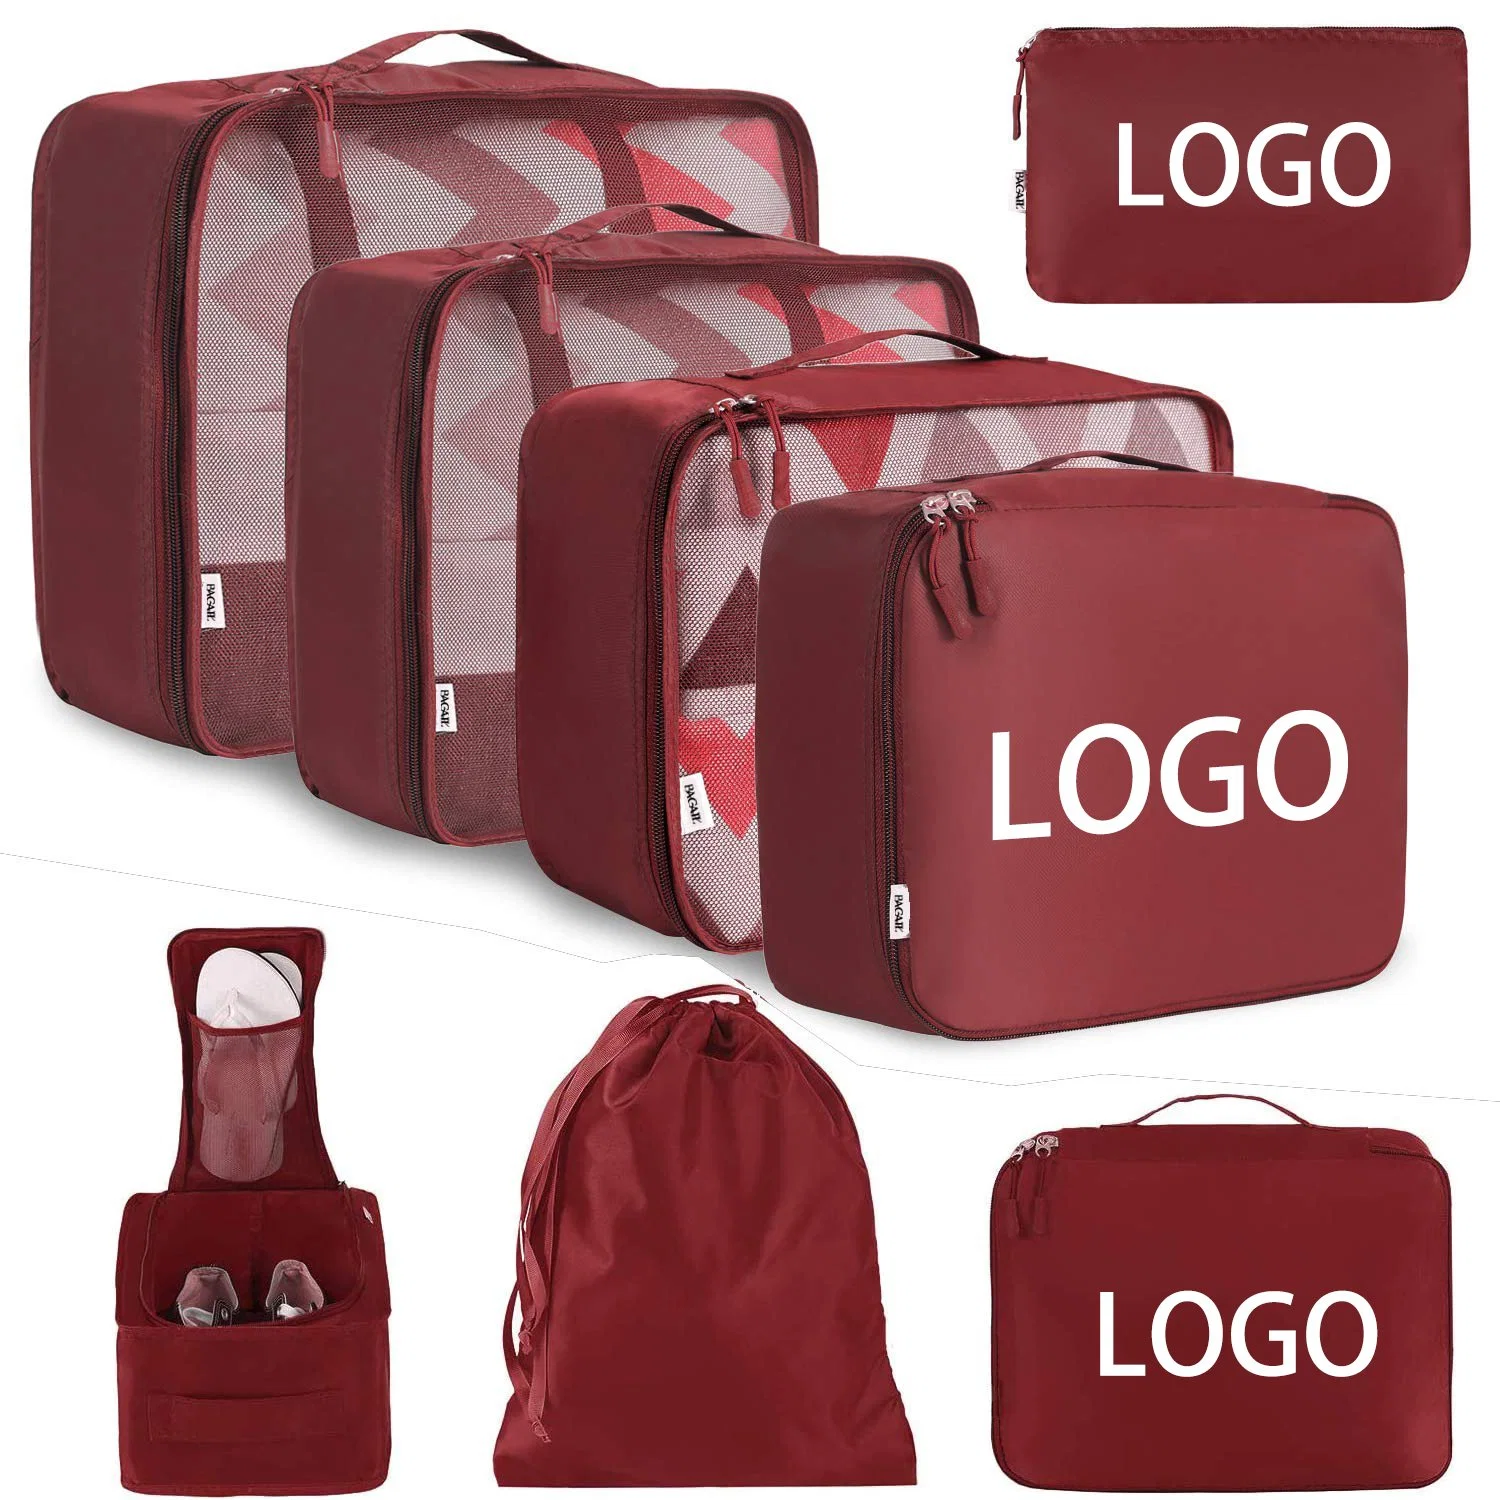 Exclusivo personalizado Conjunto impermeable de gran capacidad de cubo de Embalaje Embalaje llevar equipaje Bolsa Bolsa de viaje Bolsas de almacenamiento